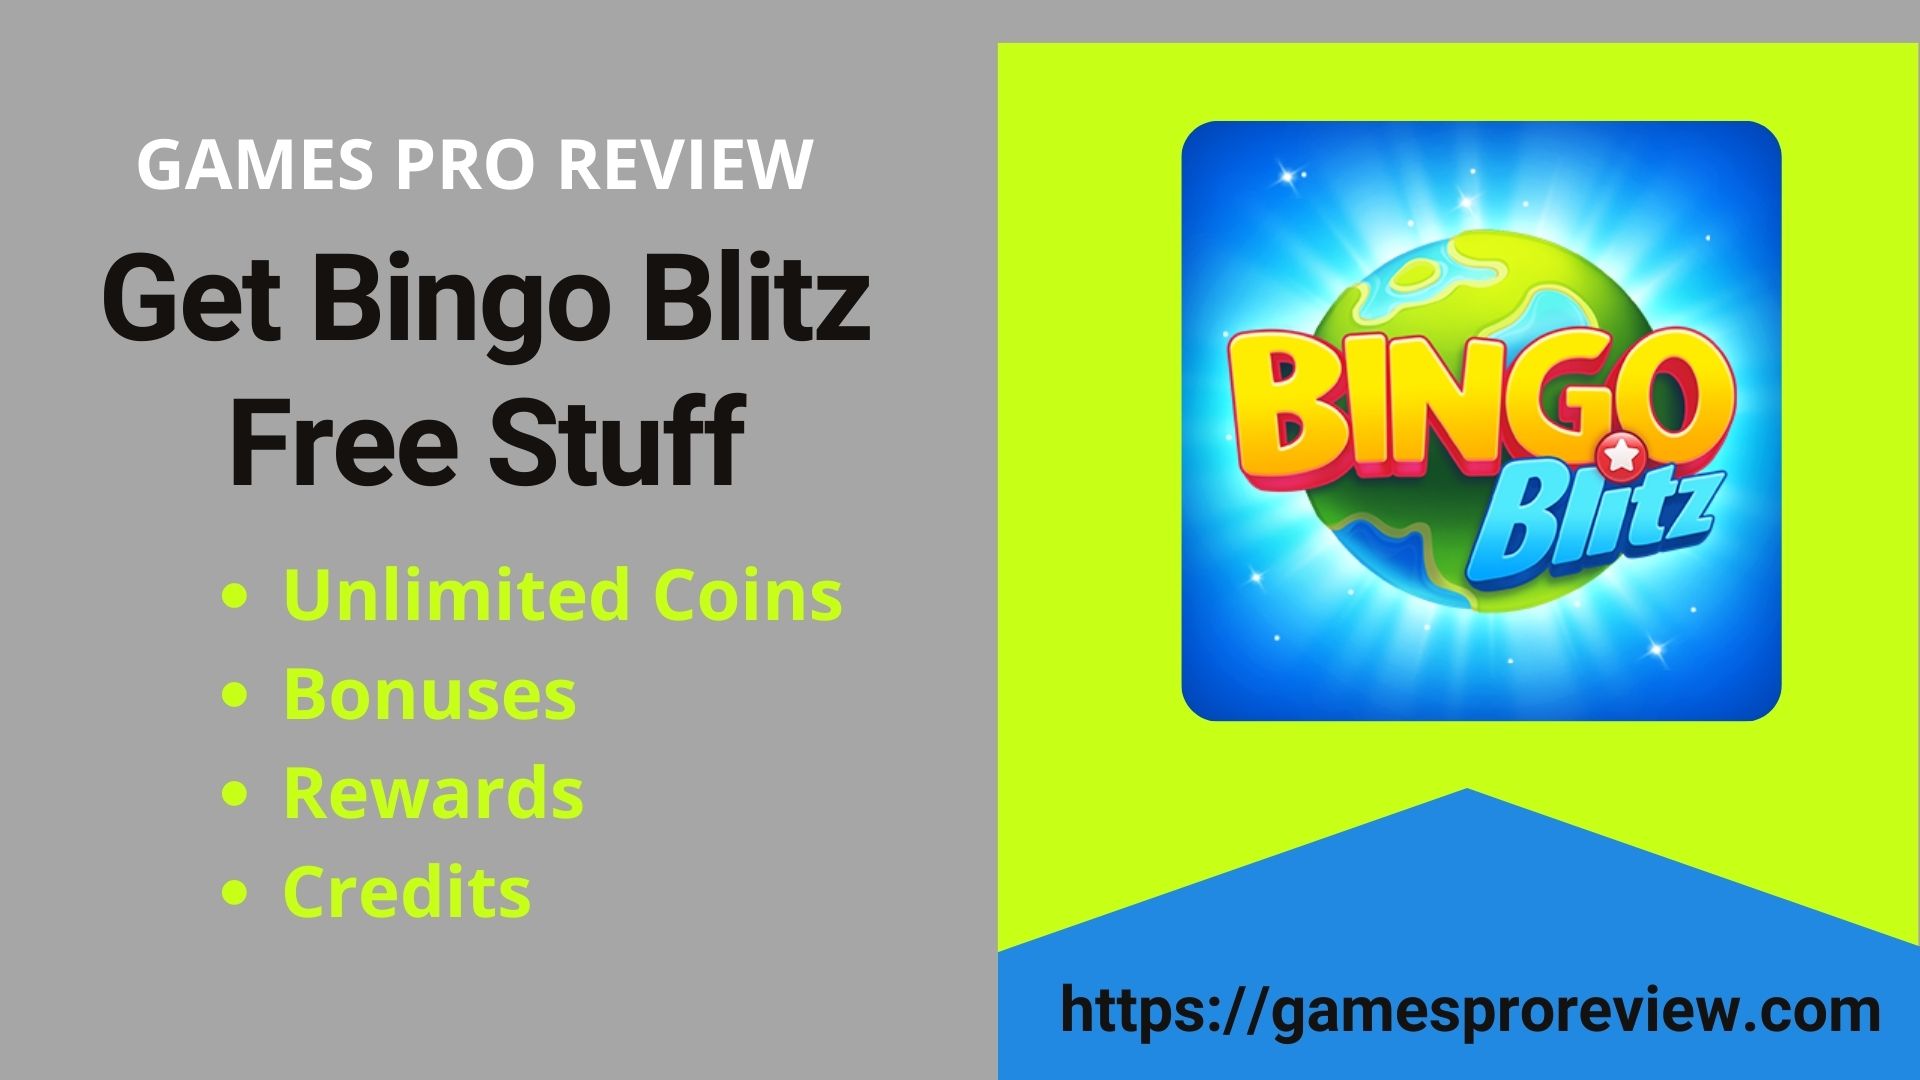 Get Bingo Blitz Free Stuff